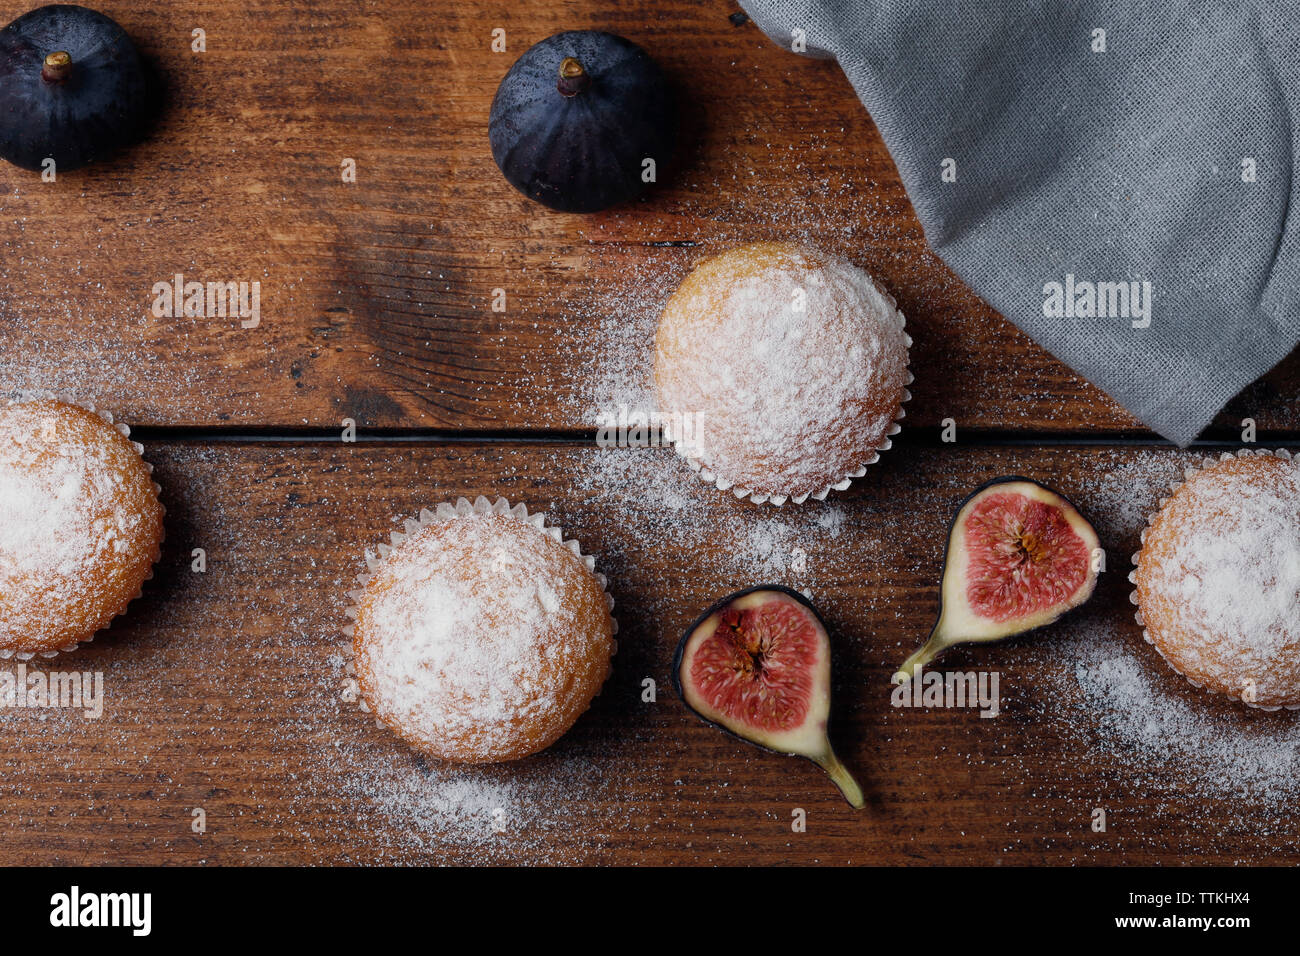 Vue de dessus de muffins aux figues par serviette sur table en bois Banque D'Images